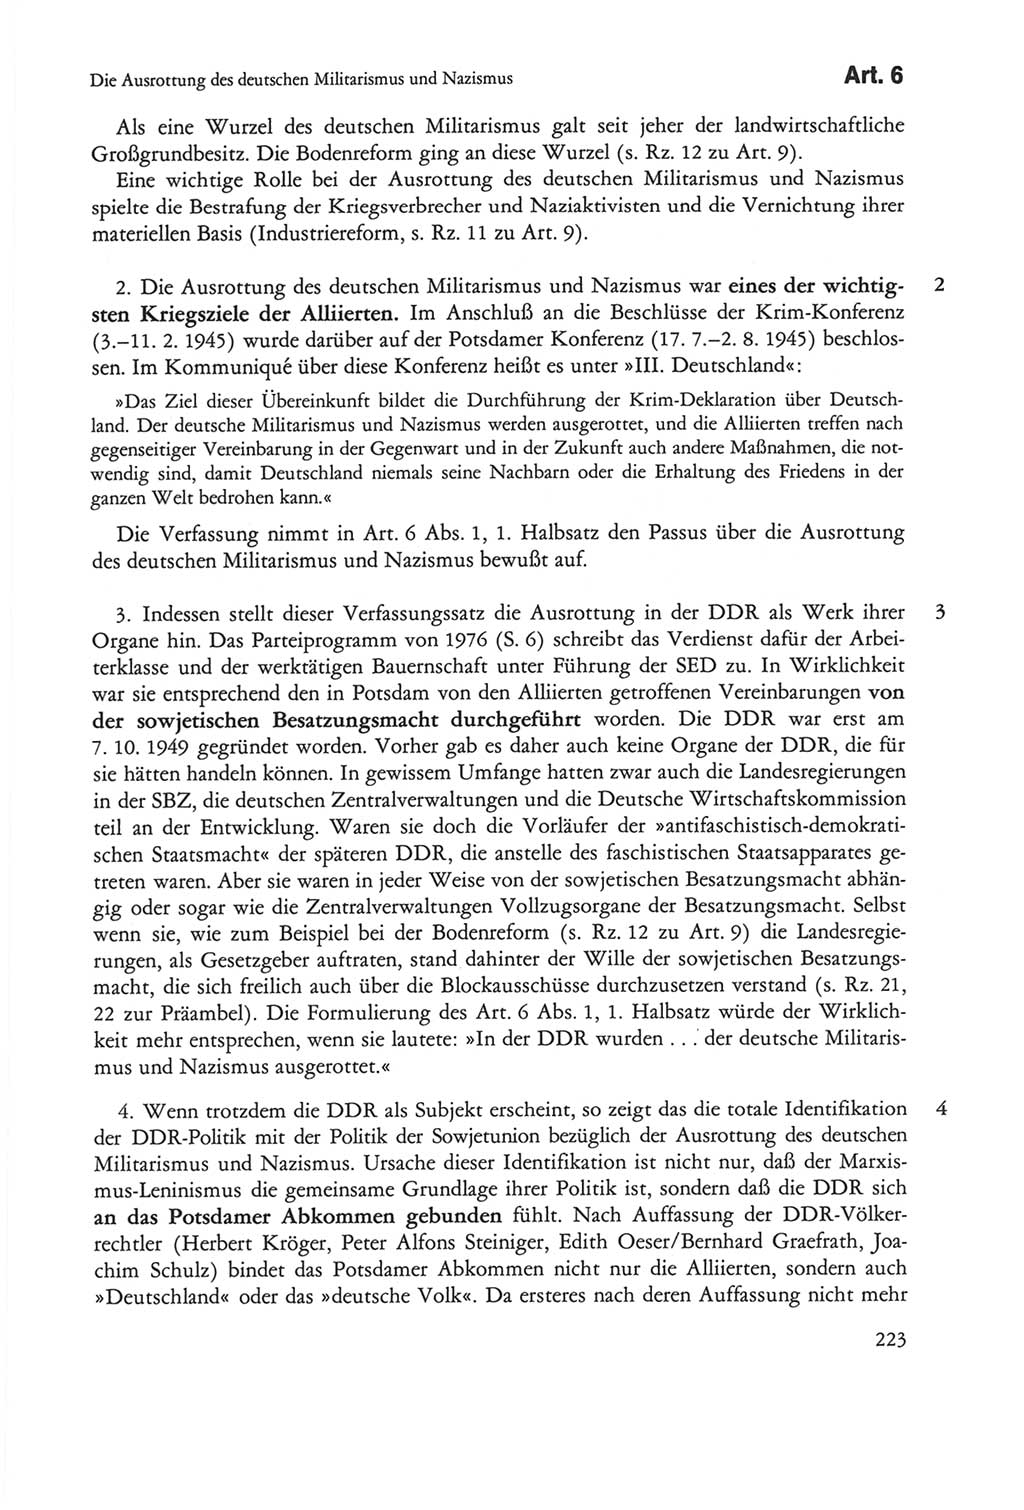 Die sozialistische Verfassung der Deutschen Demokratischen Republik (DDR), Kommentar 1982, Seite 223 (Soz. Verf. DDR Komm. 1982, S. 223)